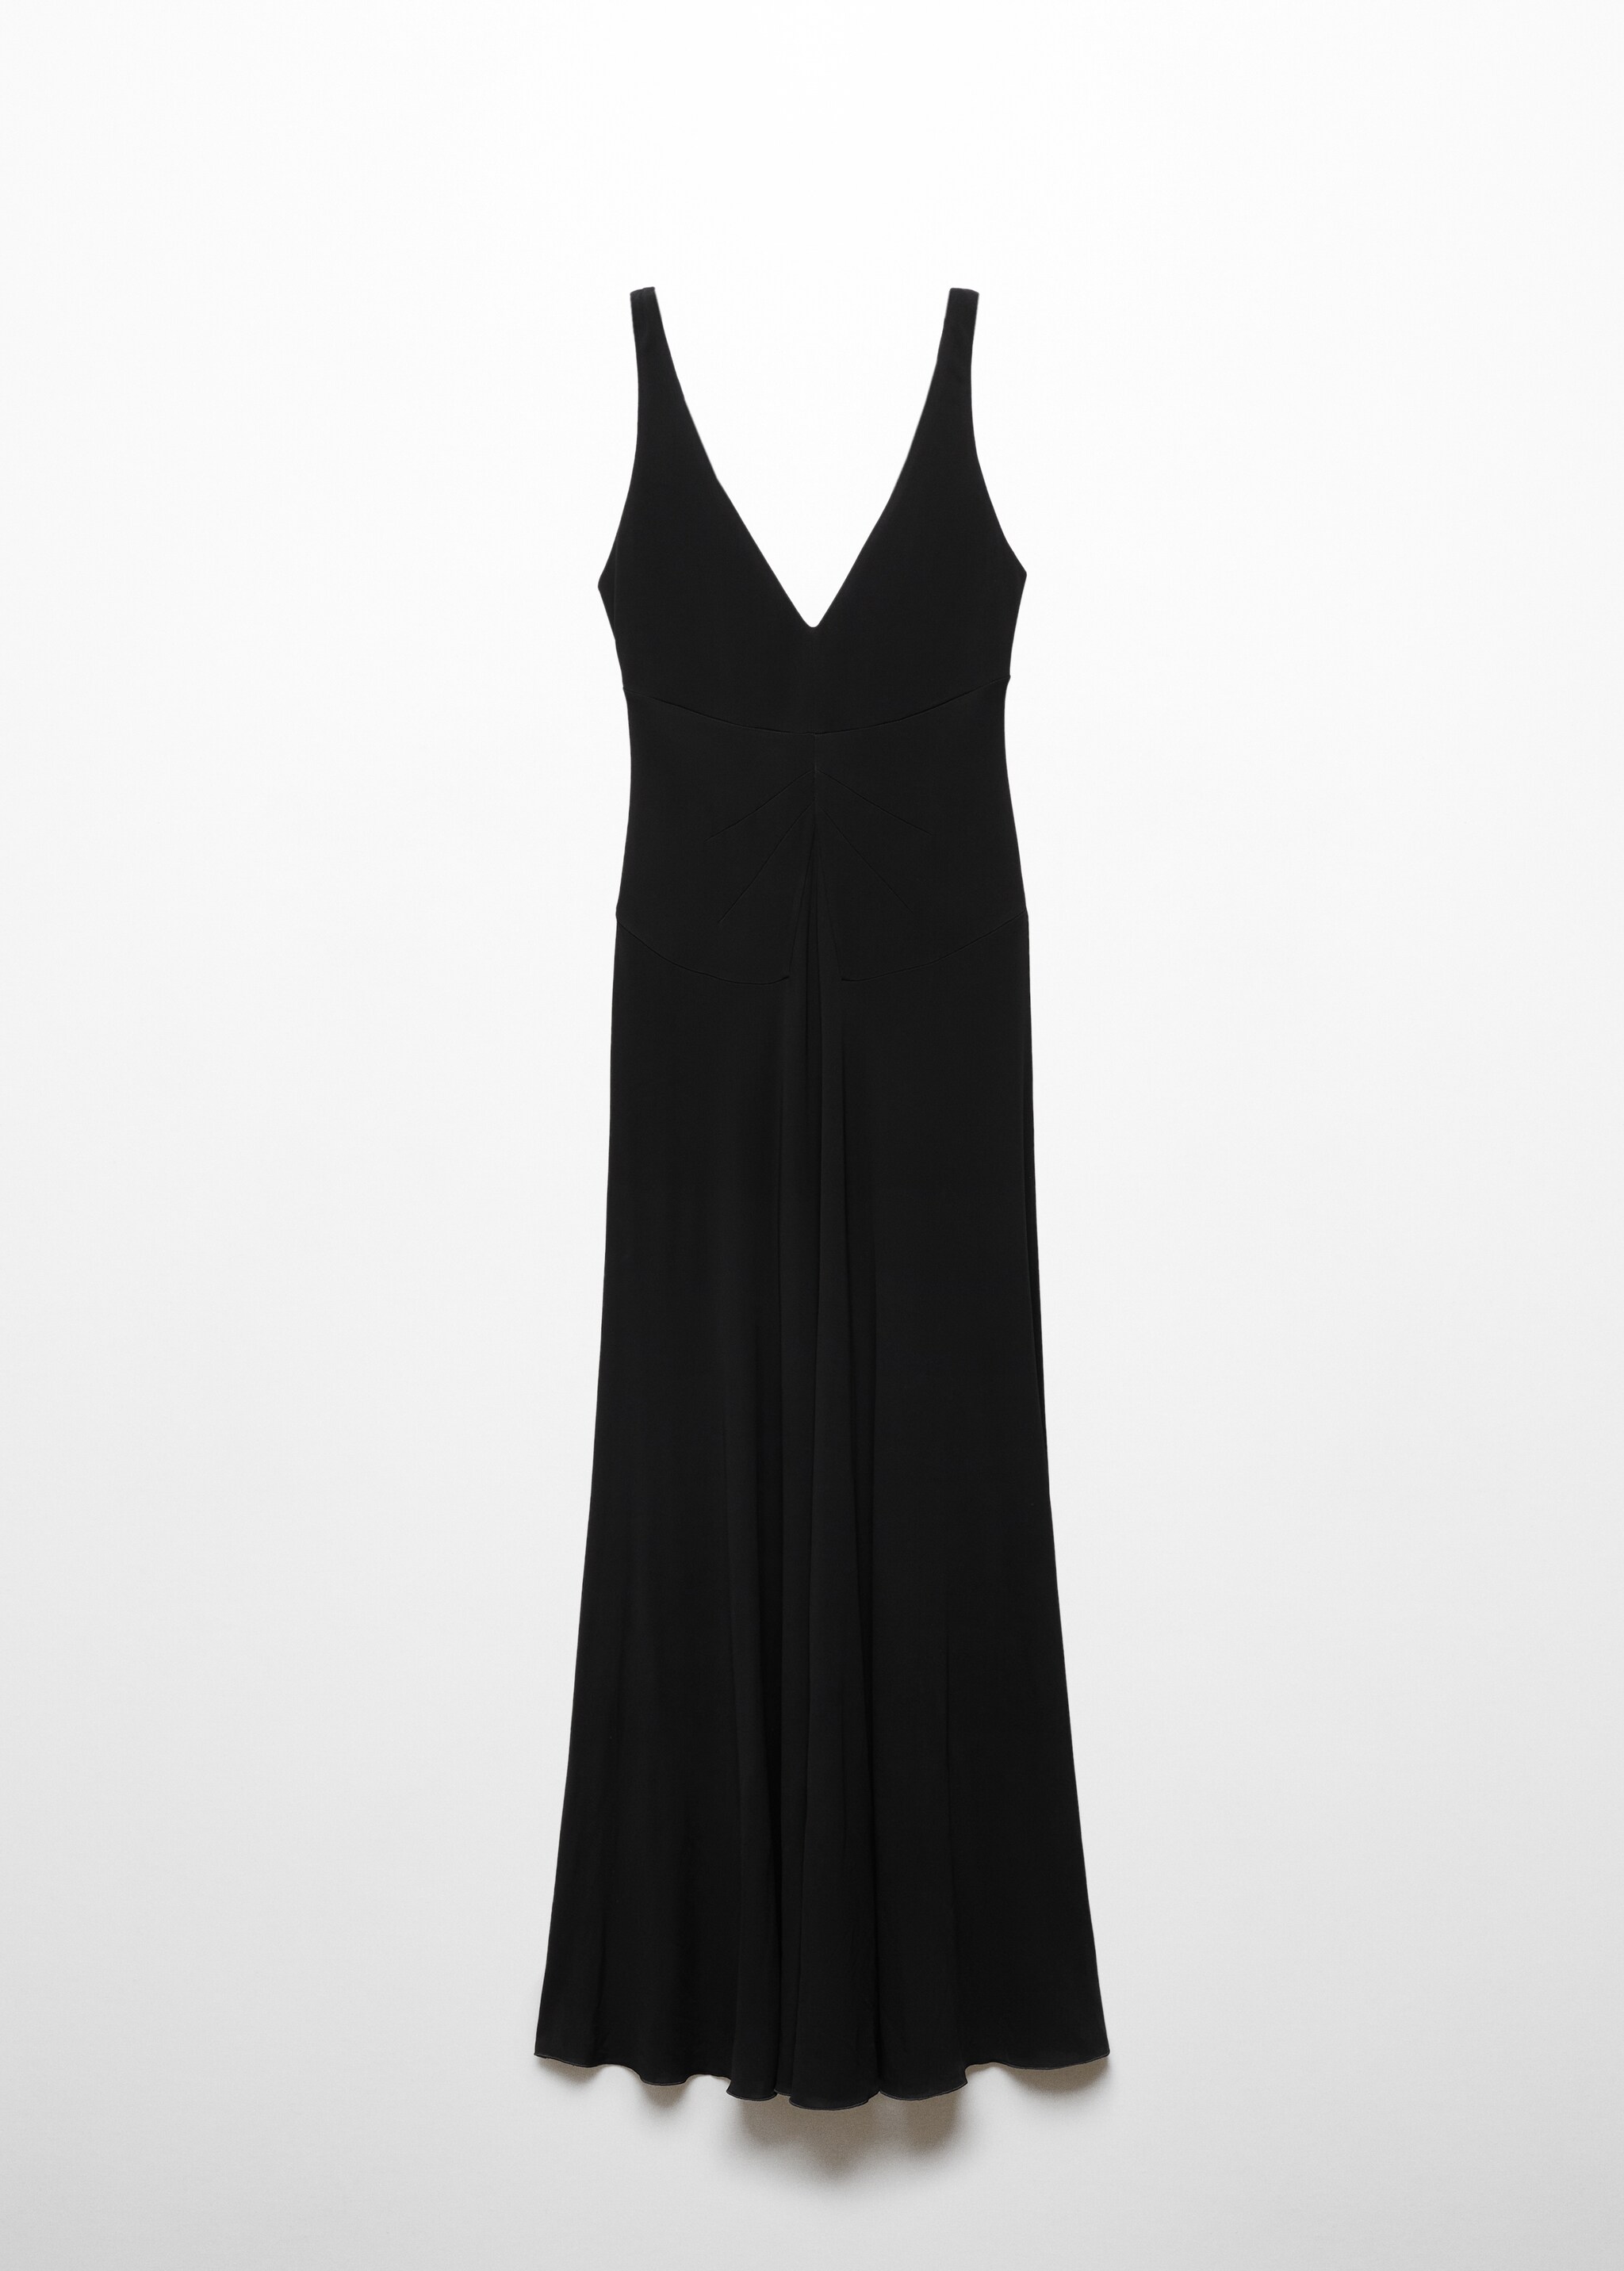 Φόρεμα πλεκτό ντραπέ ντεκολτέ - Προϊόν χωρίς μοντέλο